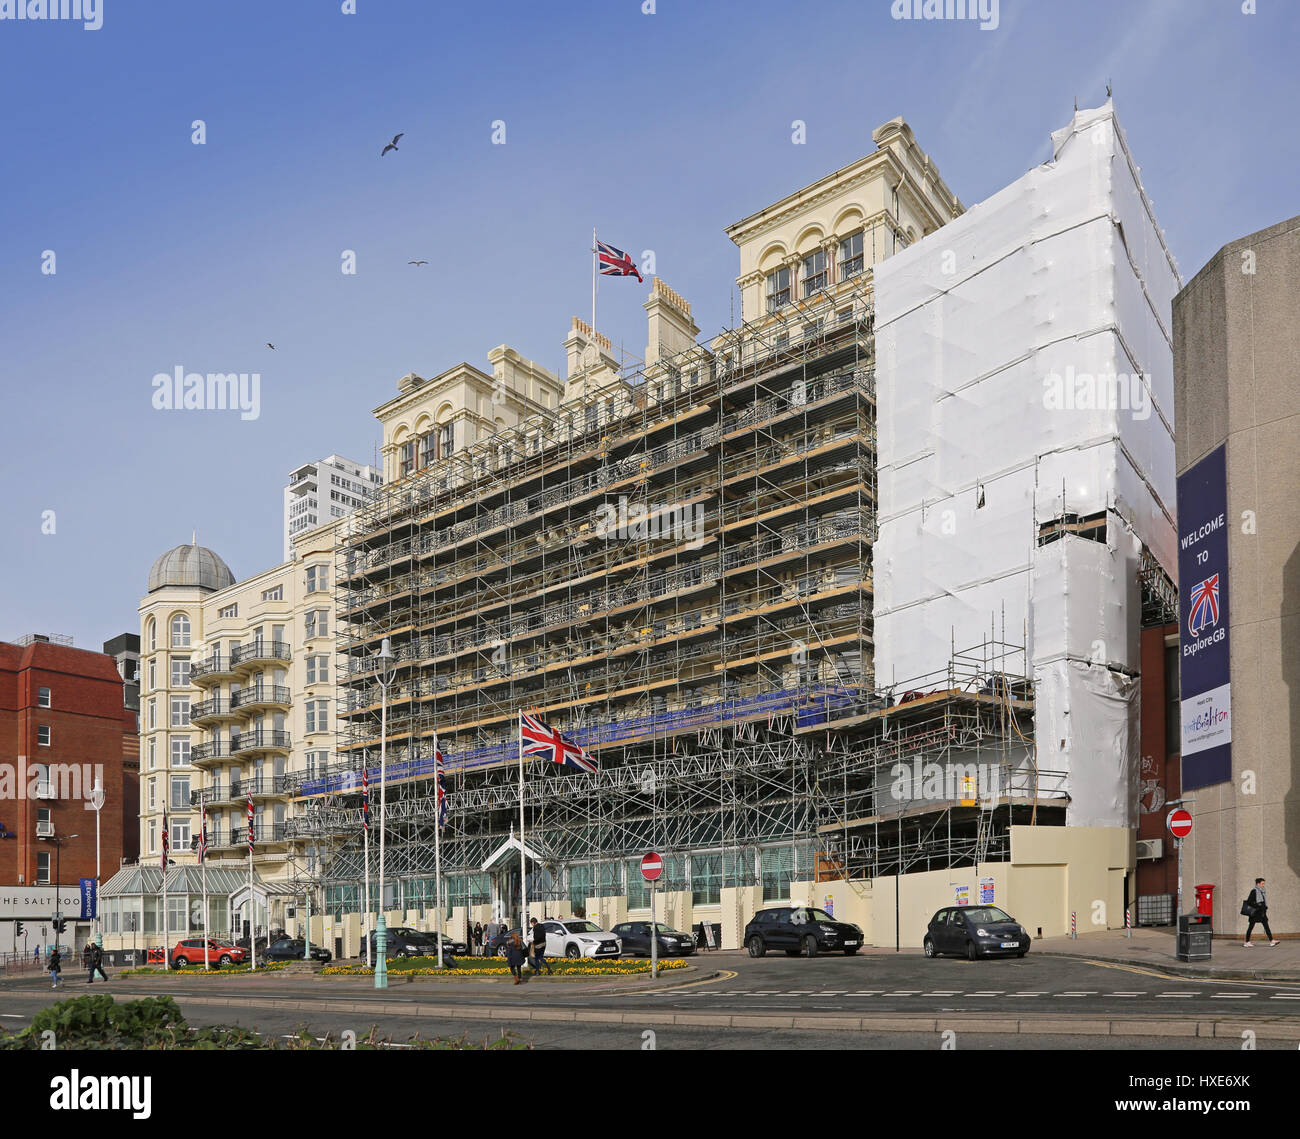 Grand Hotel Brighton, enveloppé dans un échafaudage au cours de travaux de rénovation, Mars 2017 Banque D'Images